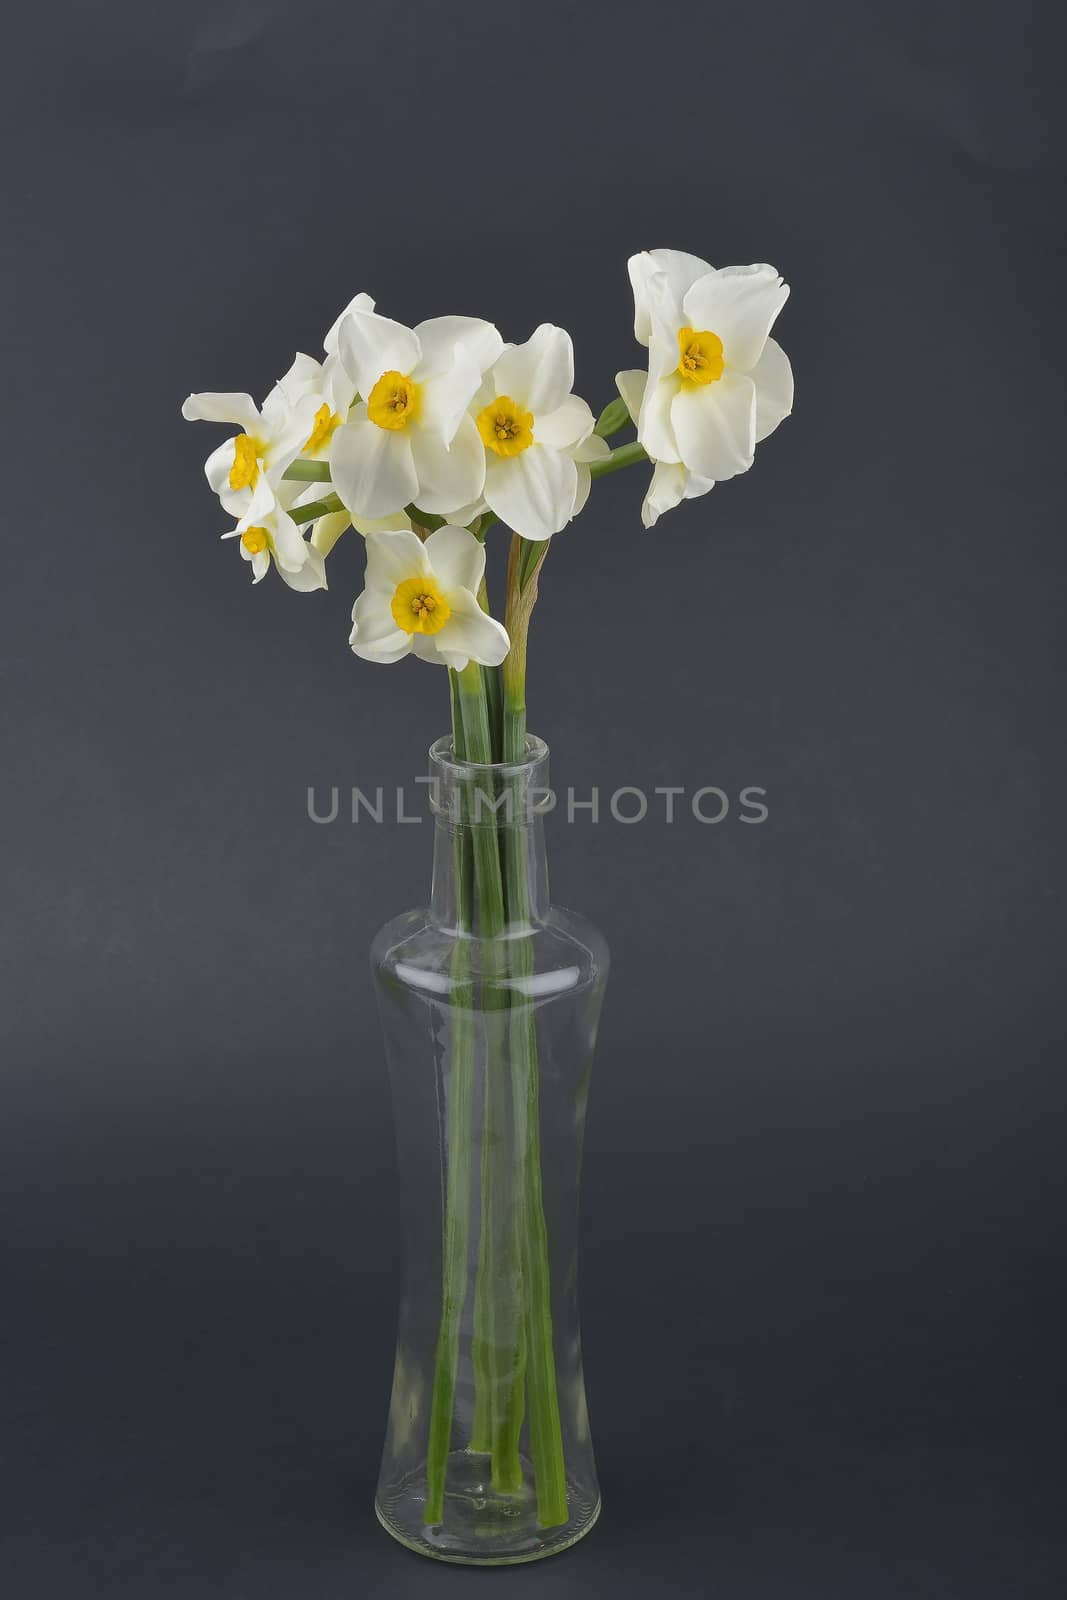 Daffodil flower by constantinhurghea